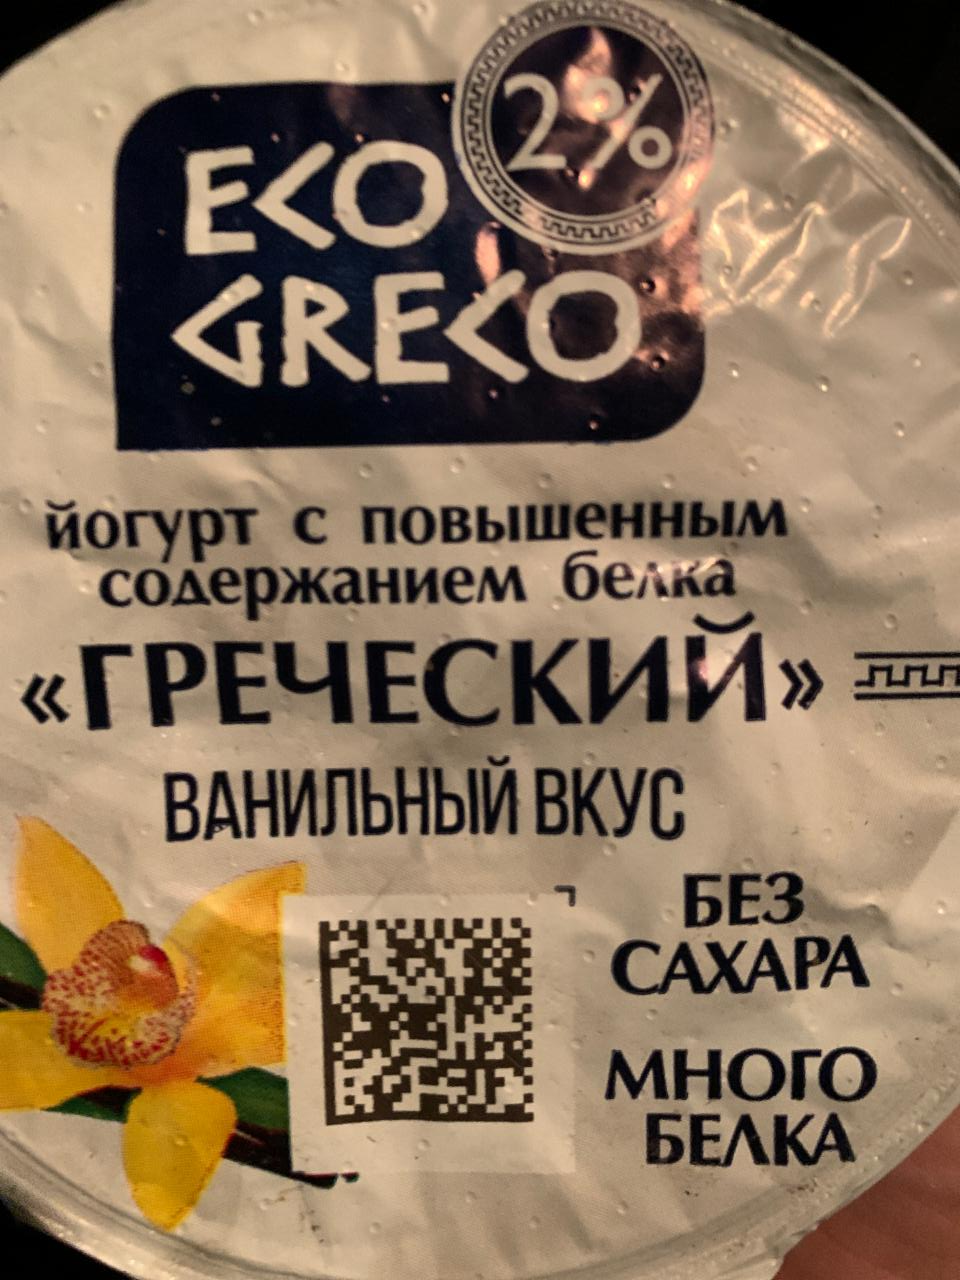 Фото - Греческий йогурт 2% ванильный вкус Eco greco